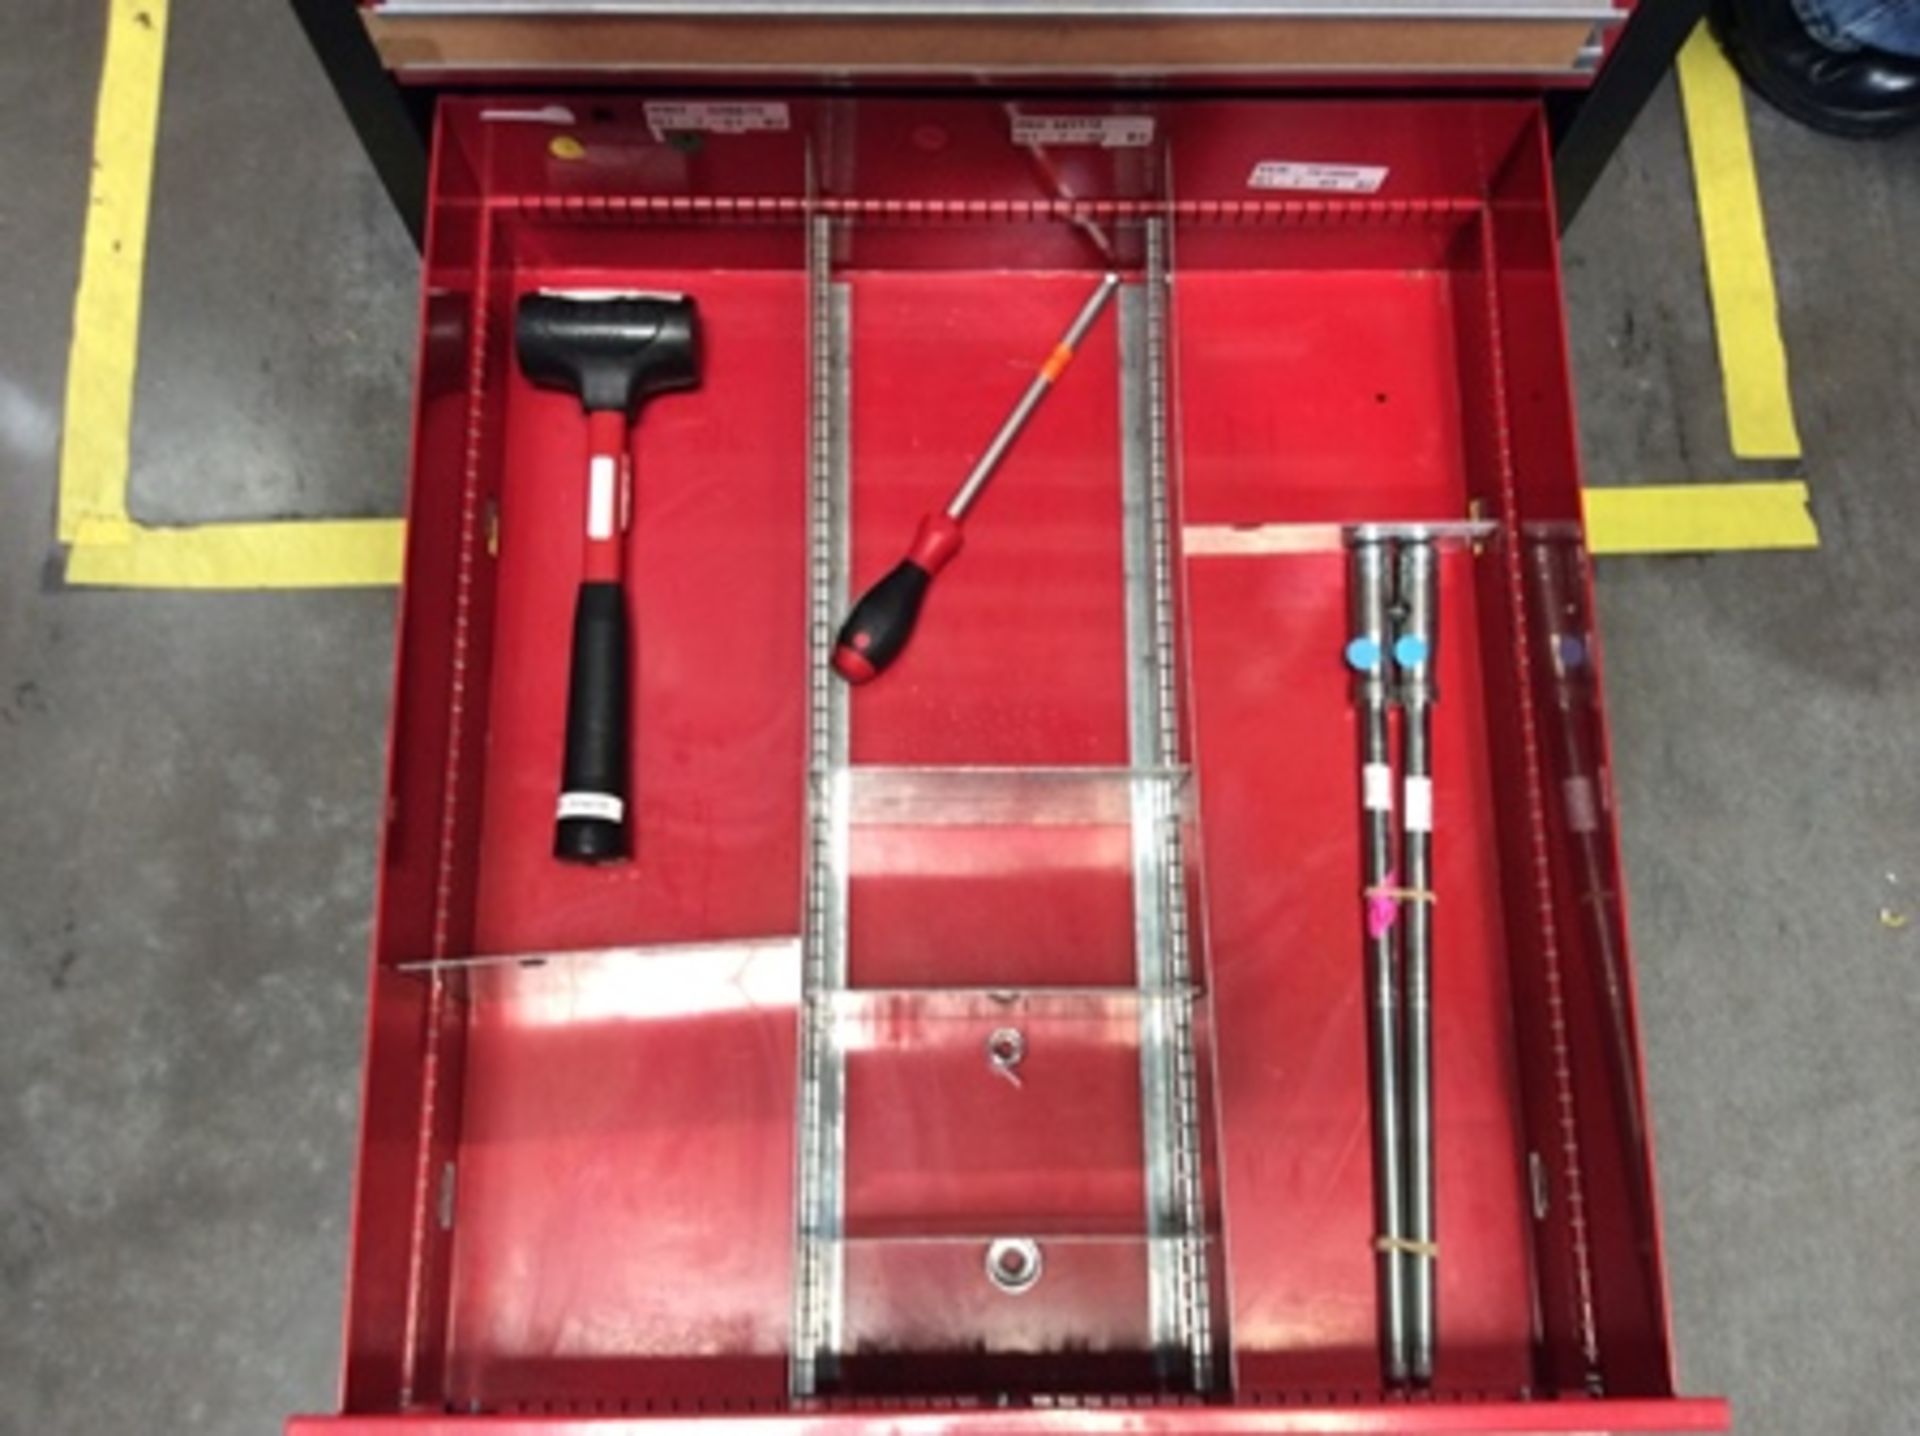 Gaveta de herramientas con 7 cajones que contiene; brocas, insertos, porta insertos, machuelos , - Image 9 of 21